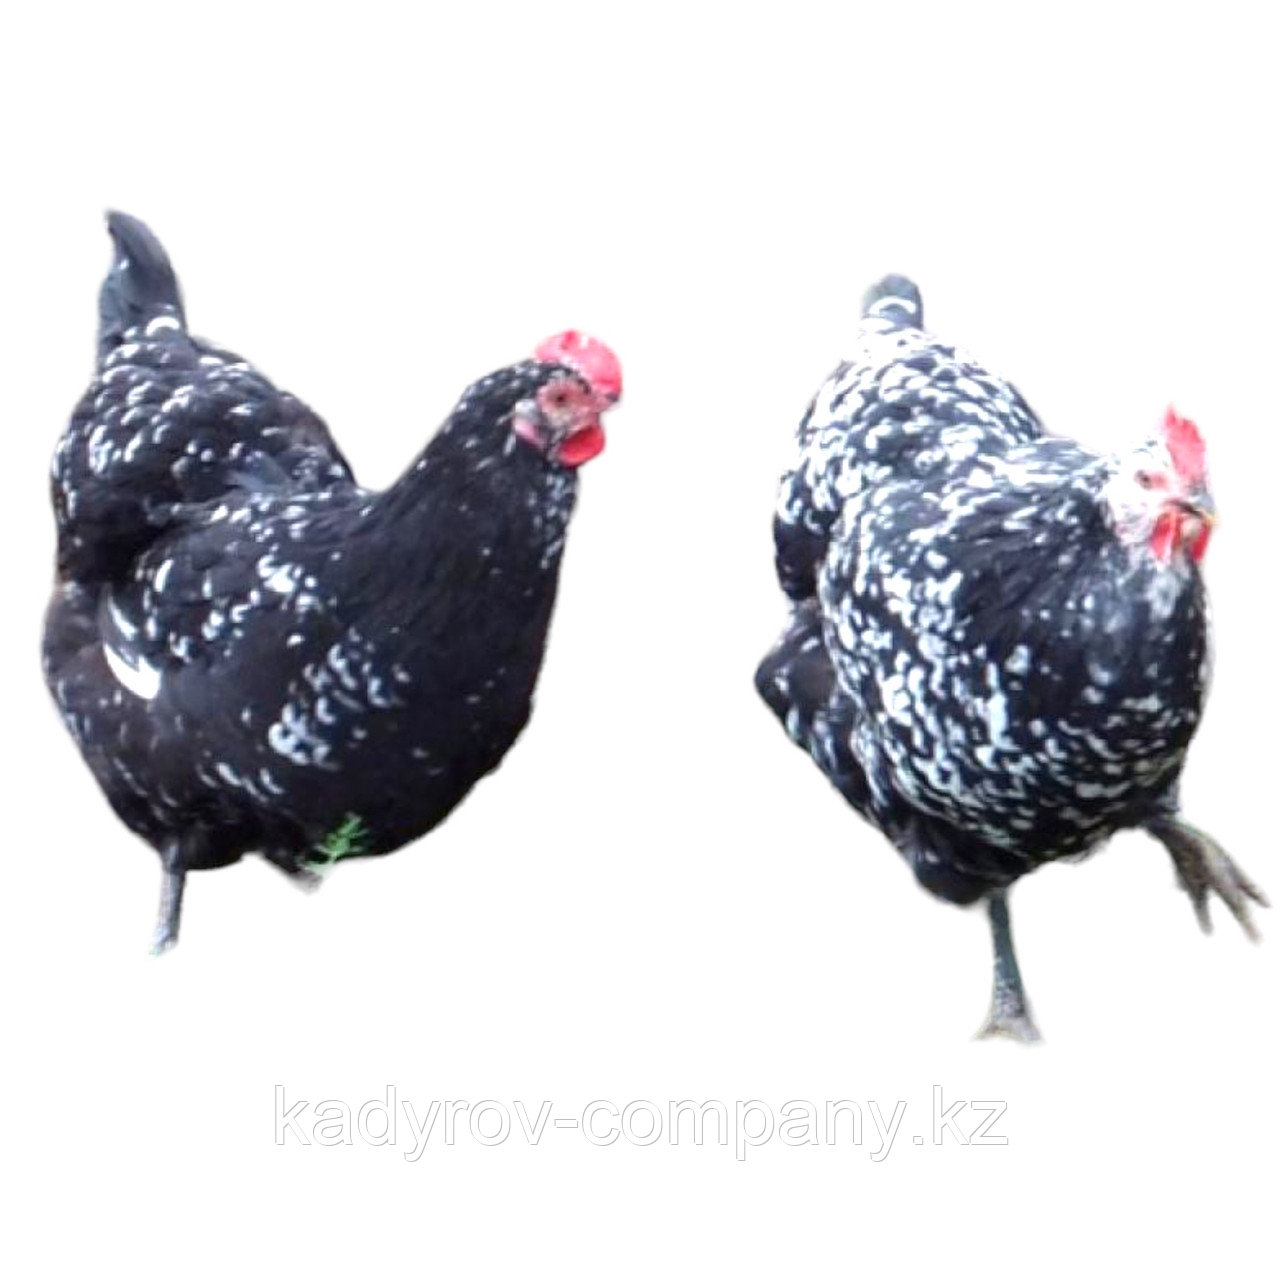 Инкубационное яйцо Австралорп чёрно-пёстрый (id 114401092), купить в  Казахстане, цена на Satu.kz